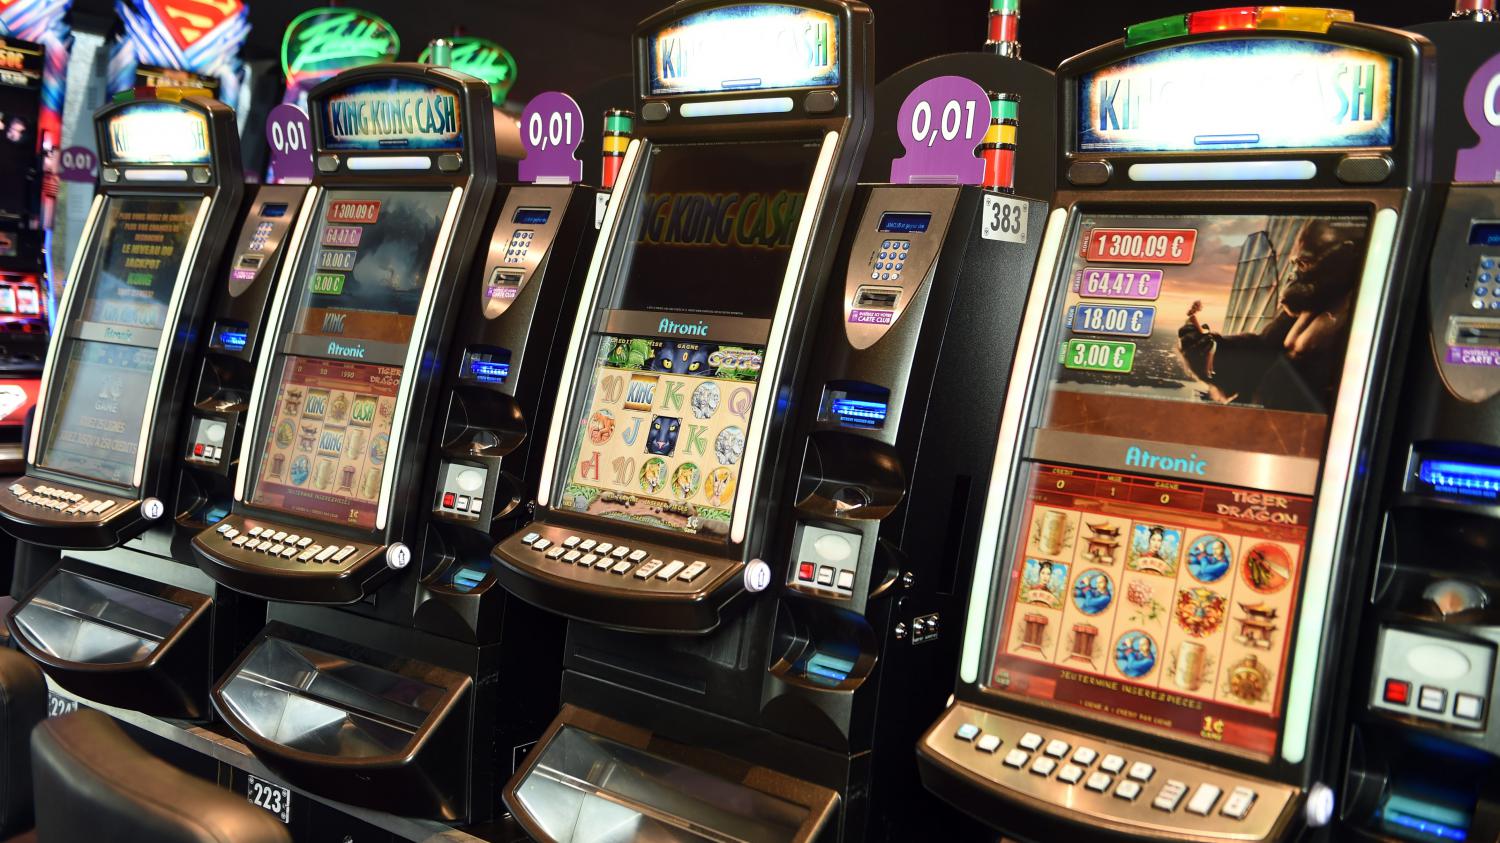 Casino en ligne : où trouver des renseignements pertinents?